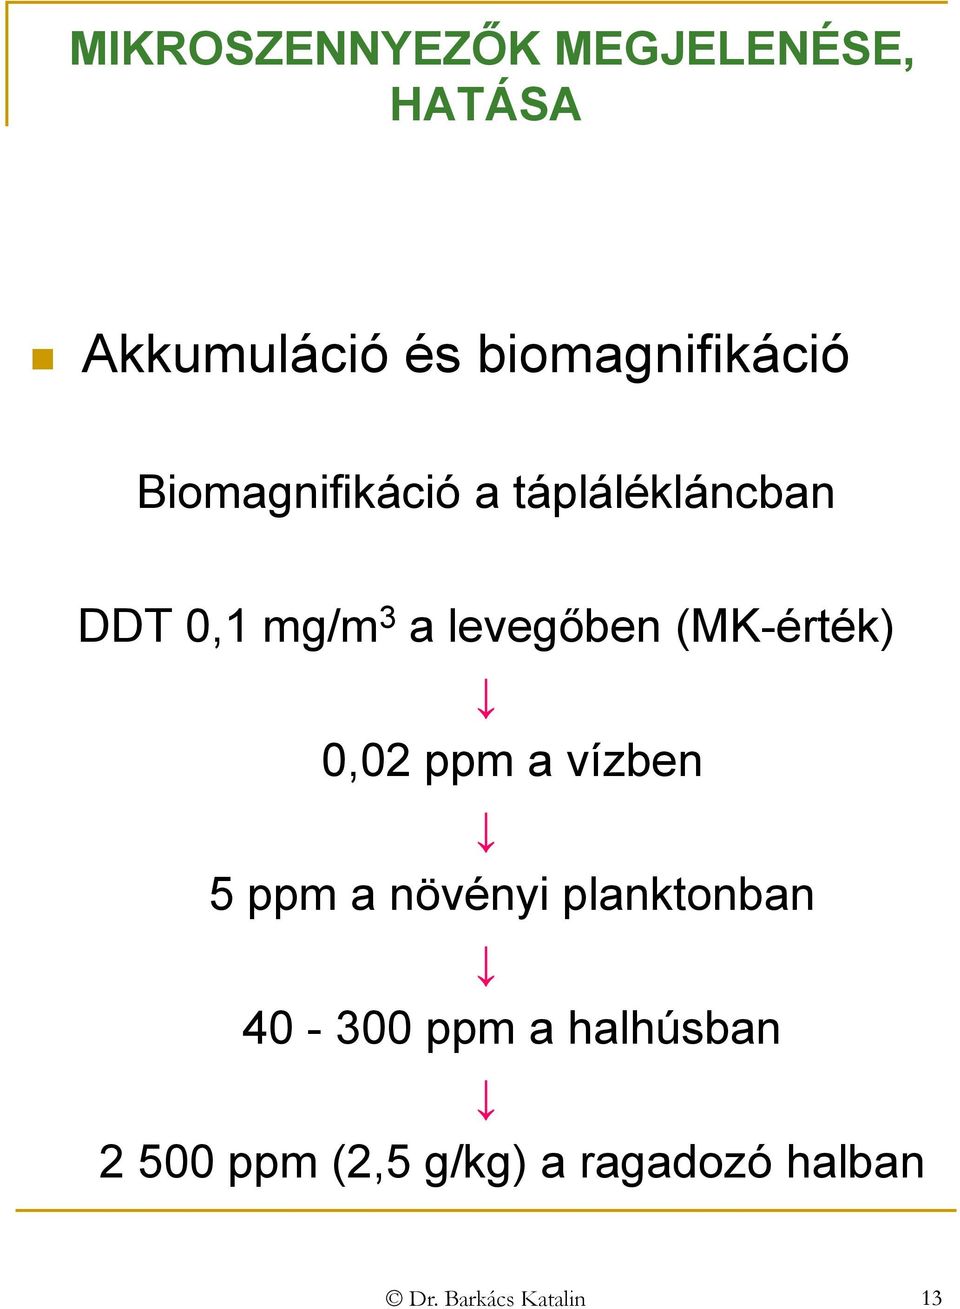 (MK-érték) 0,02 ppm a vízben 5 ppm a növényi planktonban 40-300 ppm